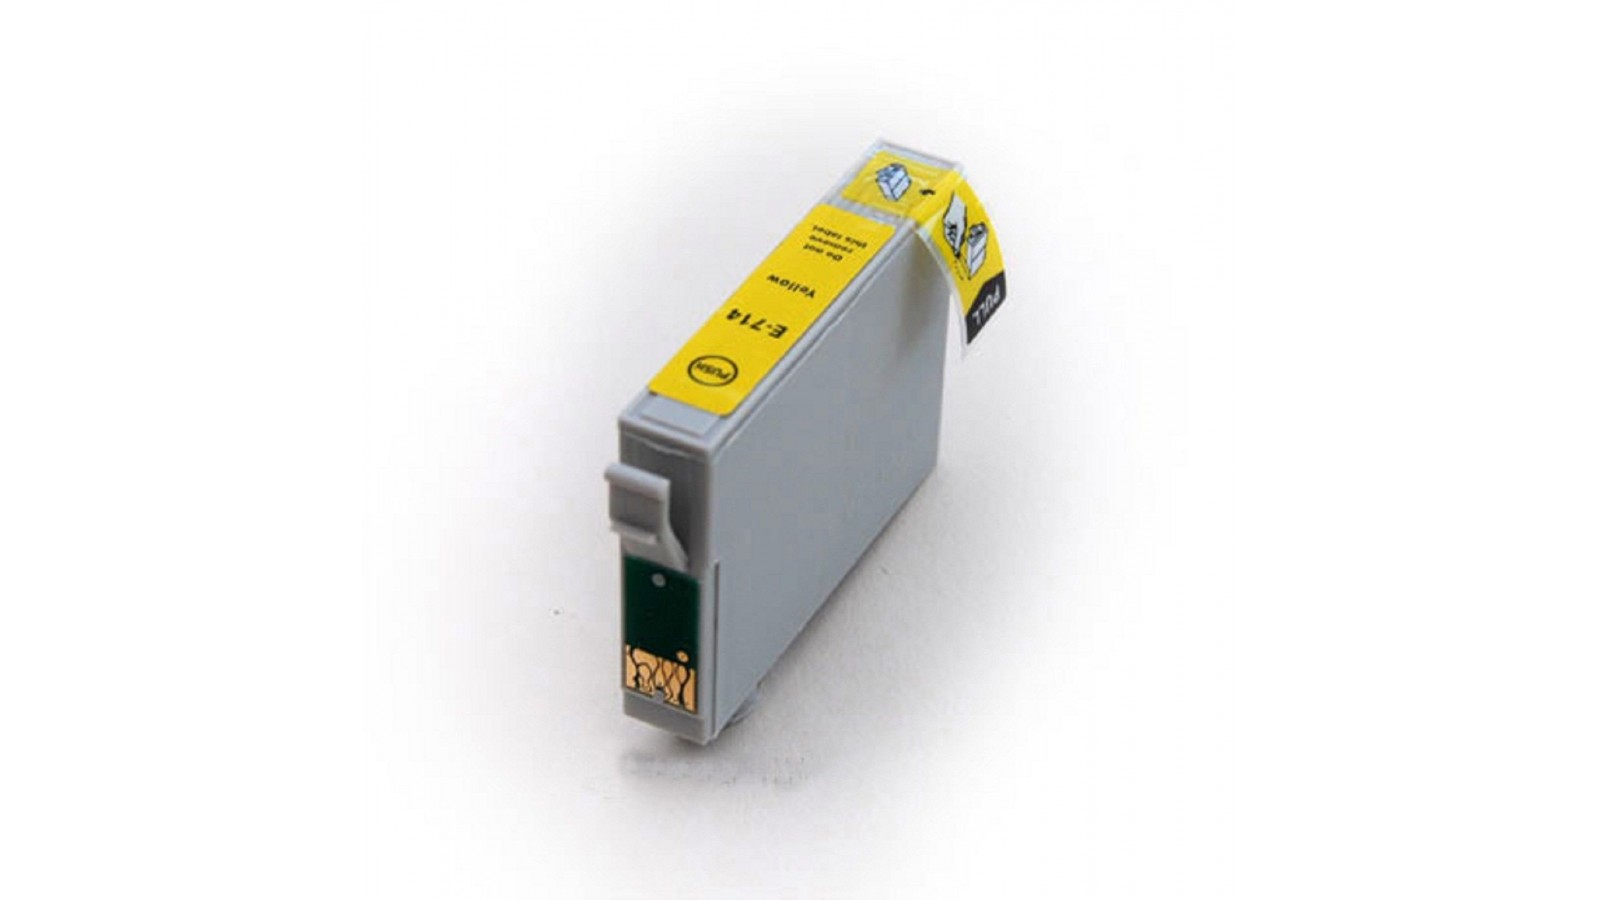 Cartuccia Inkjet per Epson Stylus DX4450 DX5000 DX5050 DX6000 DX6050 yellow